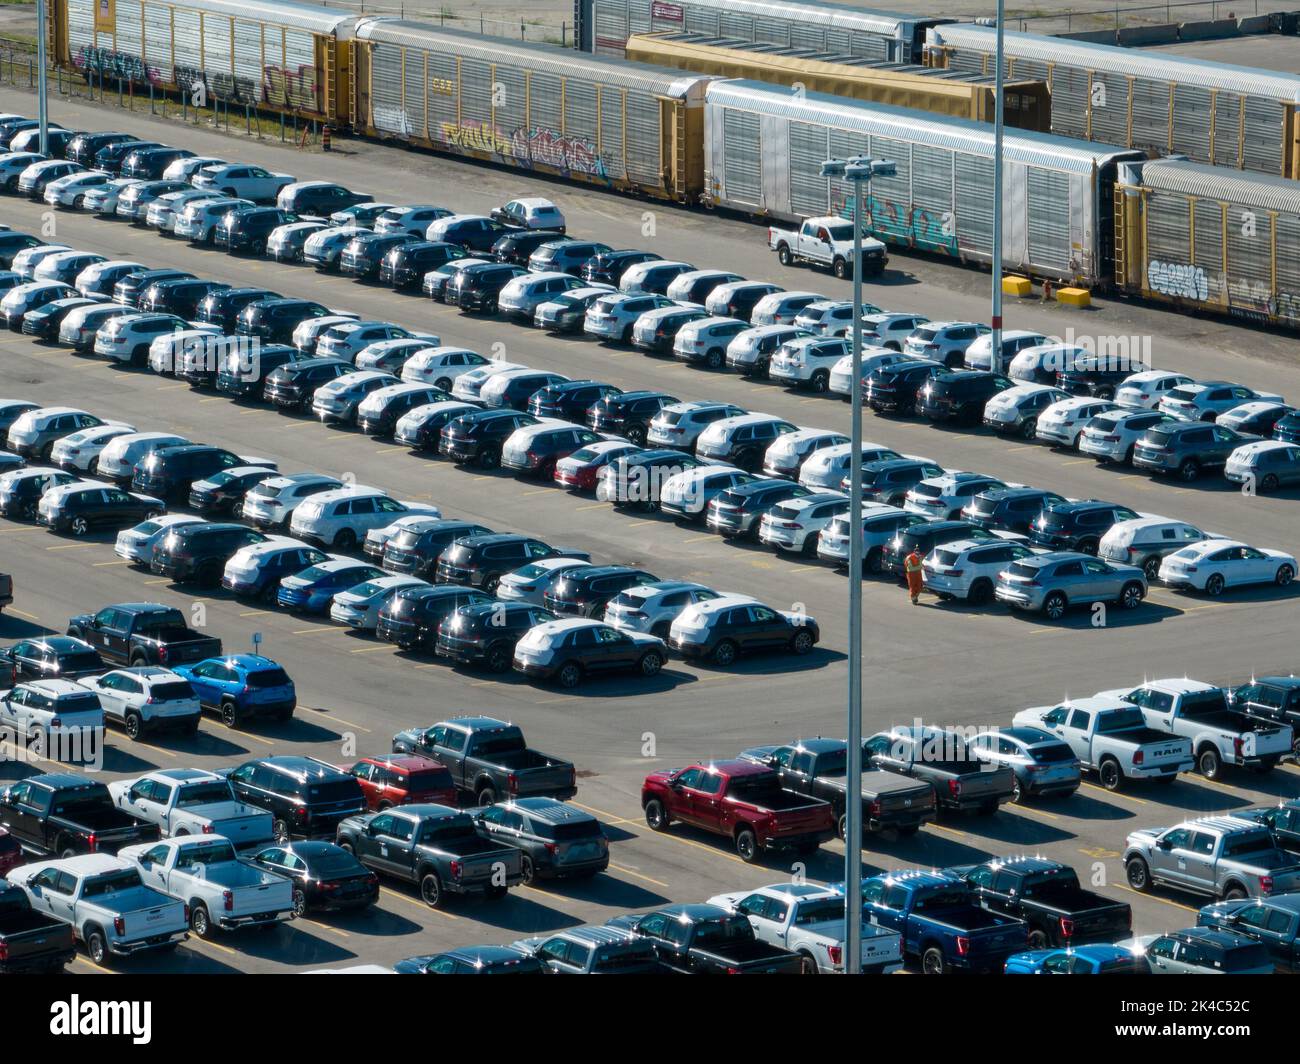 Une vue aérienne élevée d'un centre de distribution et d'homologation d'automobiles, situé à côté des wagons de marchandises par une journée ensoleillée. Banque D'Images